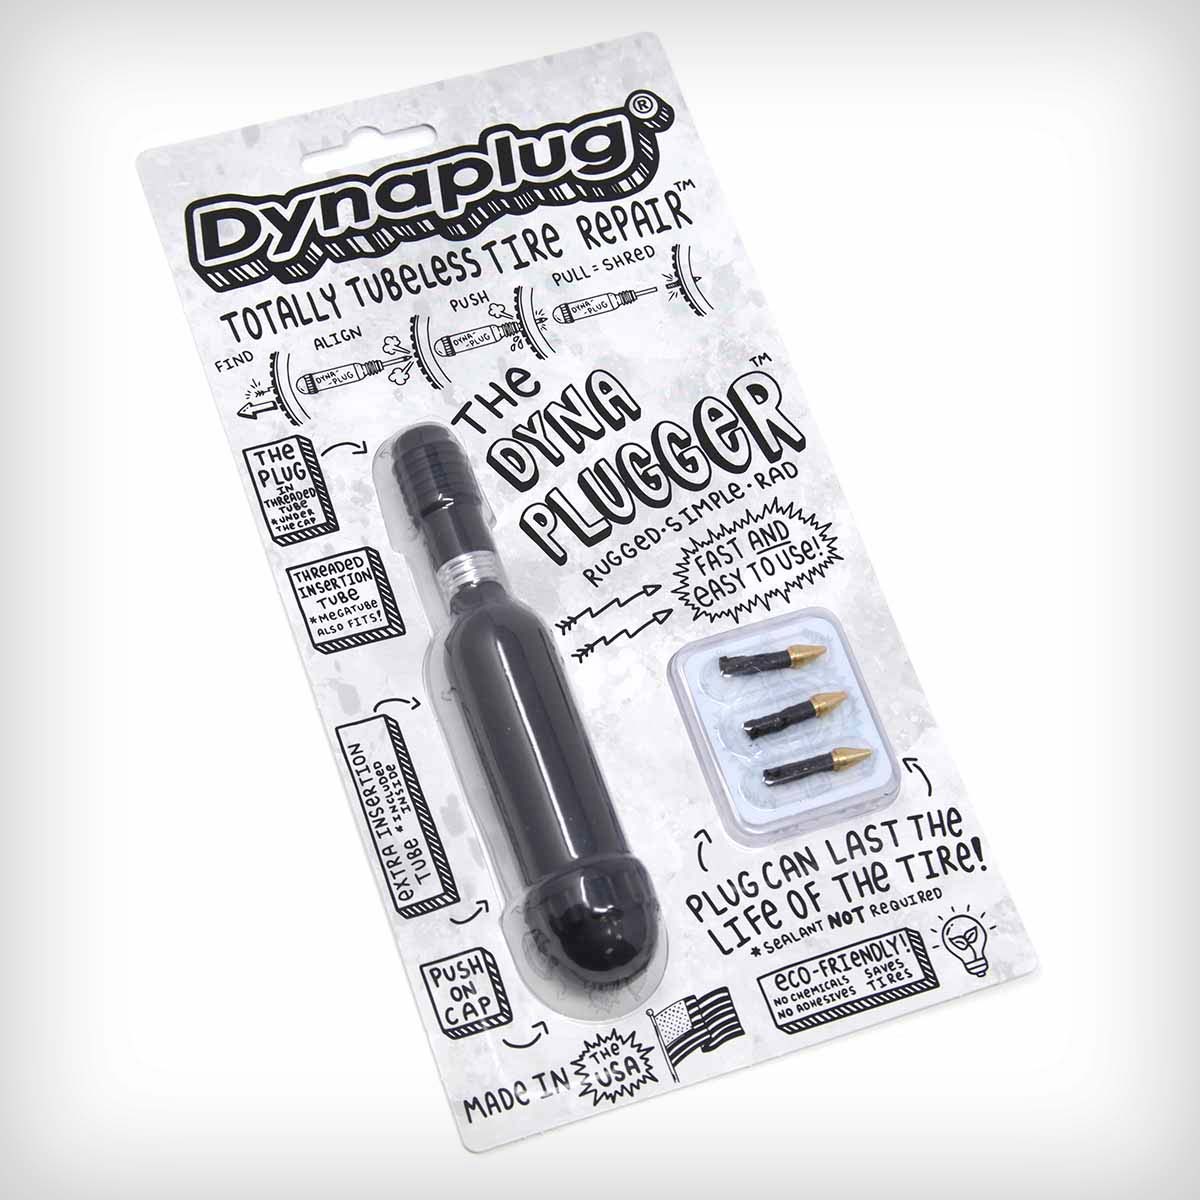 En TodoMountainBike: Dynaplug presenta el Dynaplugger, su herramienta de reparación Tubeless más económica